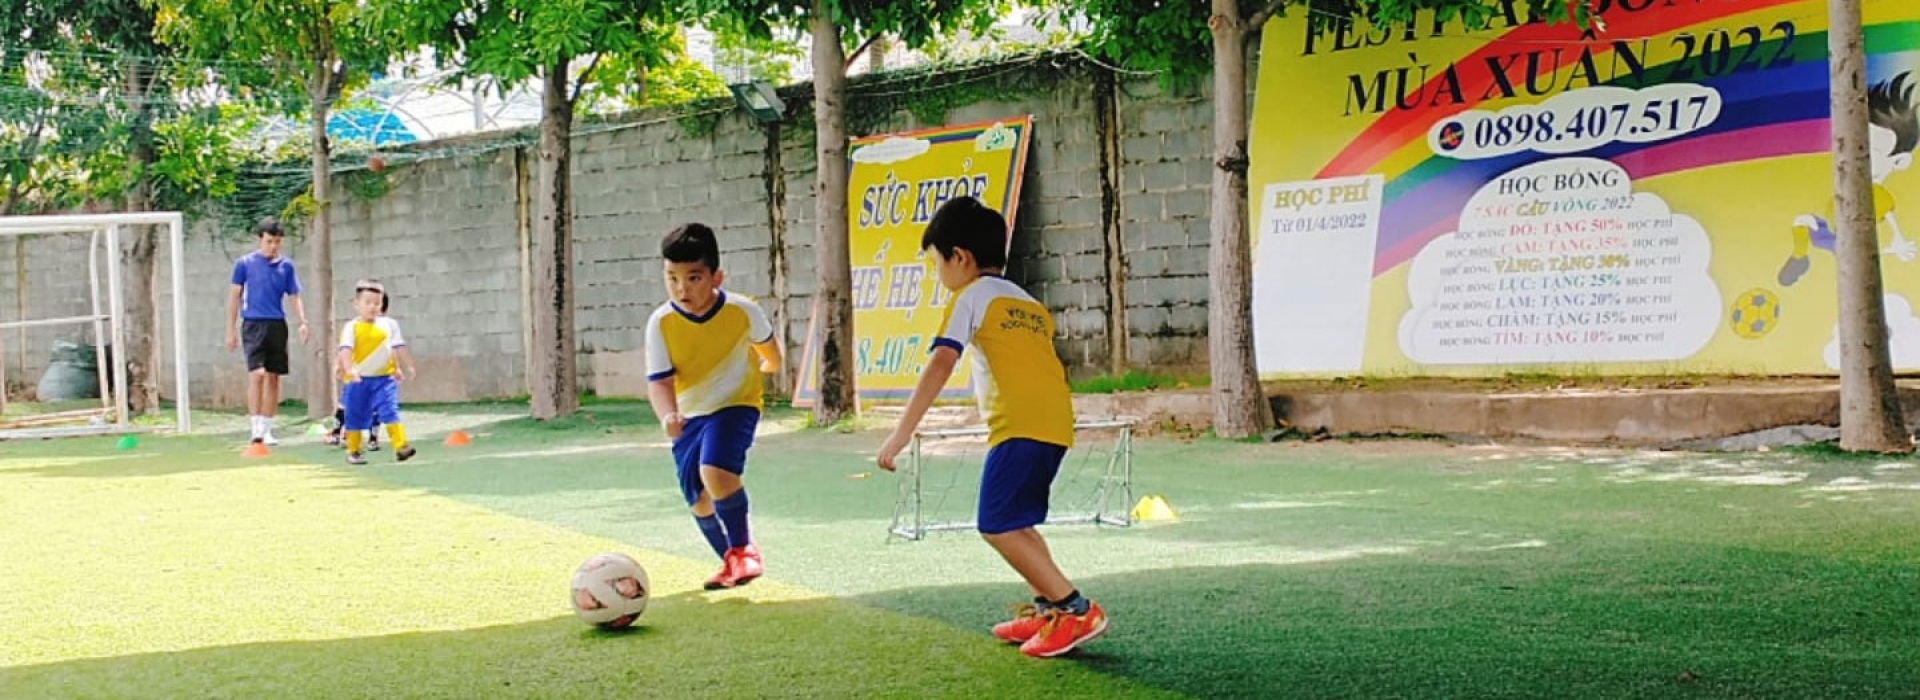 Trung tâm đào tạo bóng đá Voi Việt